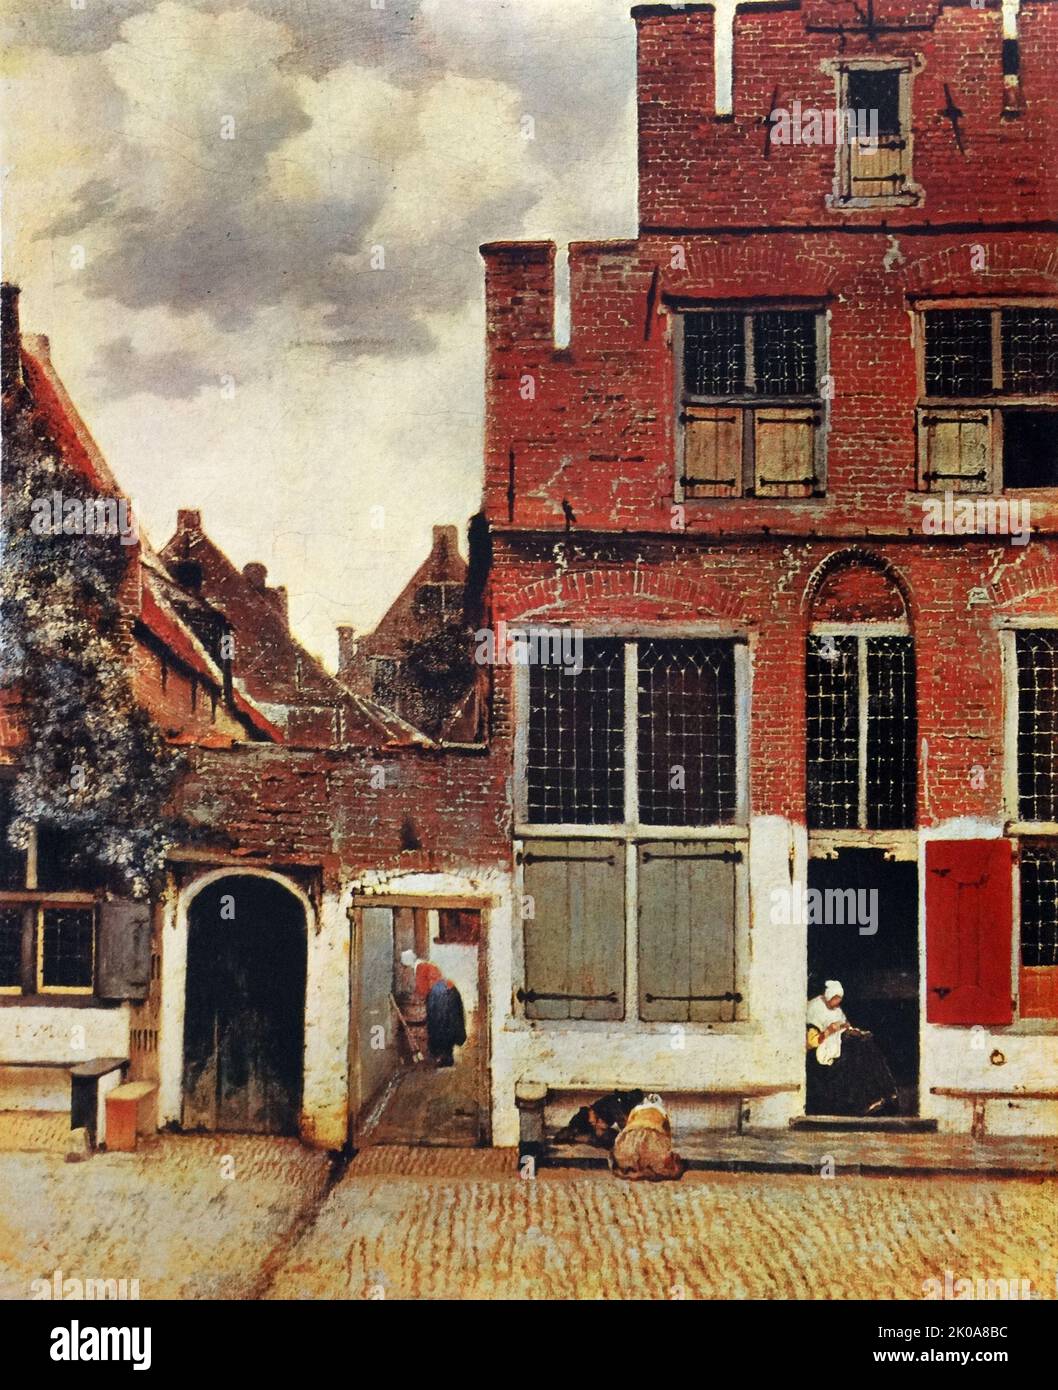 Peinture de l'artiste-peintre néerlandais Jan Vermeer. Johannes Vermeer (octobre 1632 - décembre 1675) était un peintre baroque néerlandais spécialisé dans les scènes intérieures de la vie de classe moyenne Banque D'Images